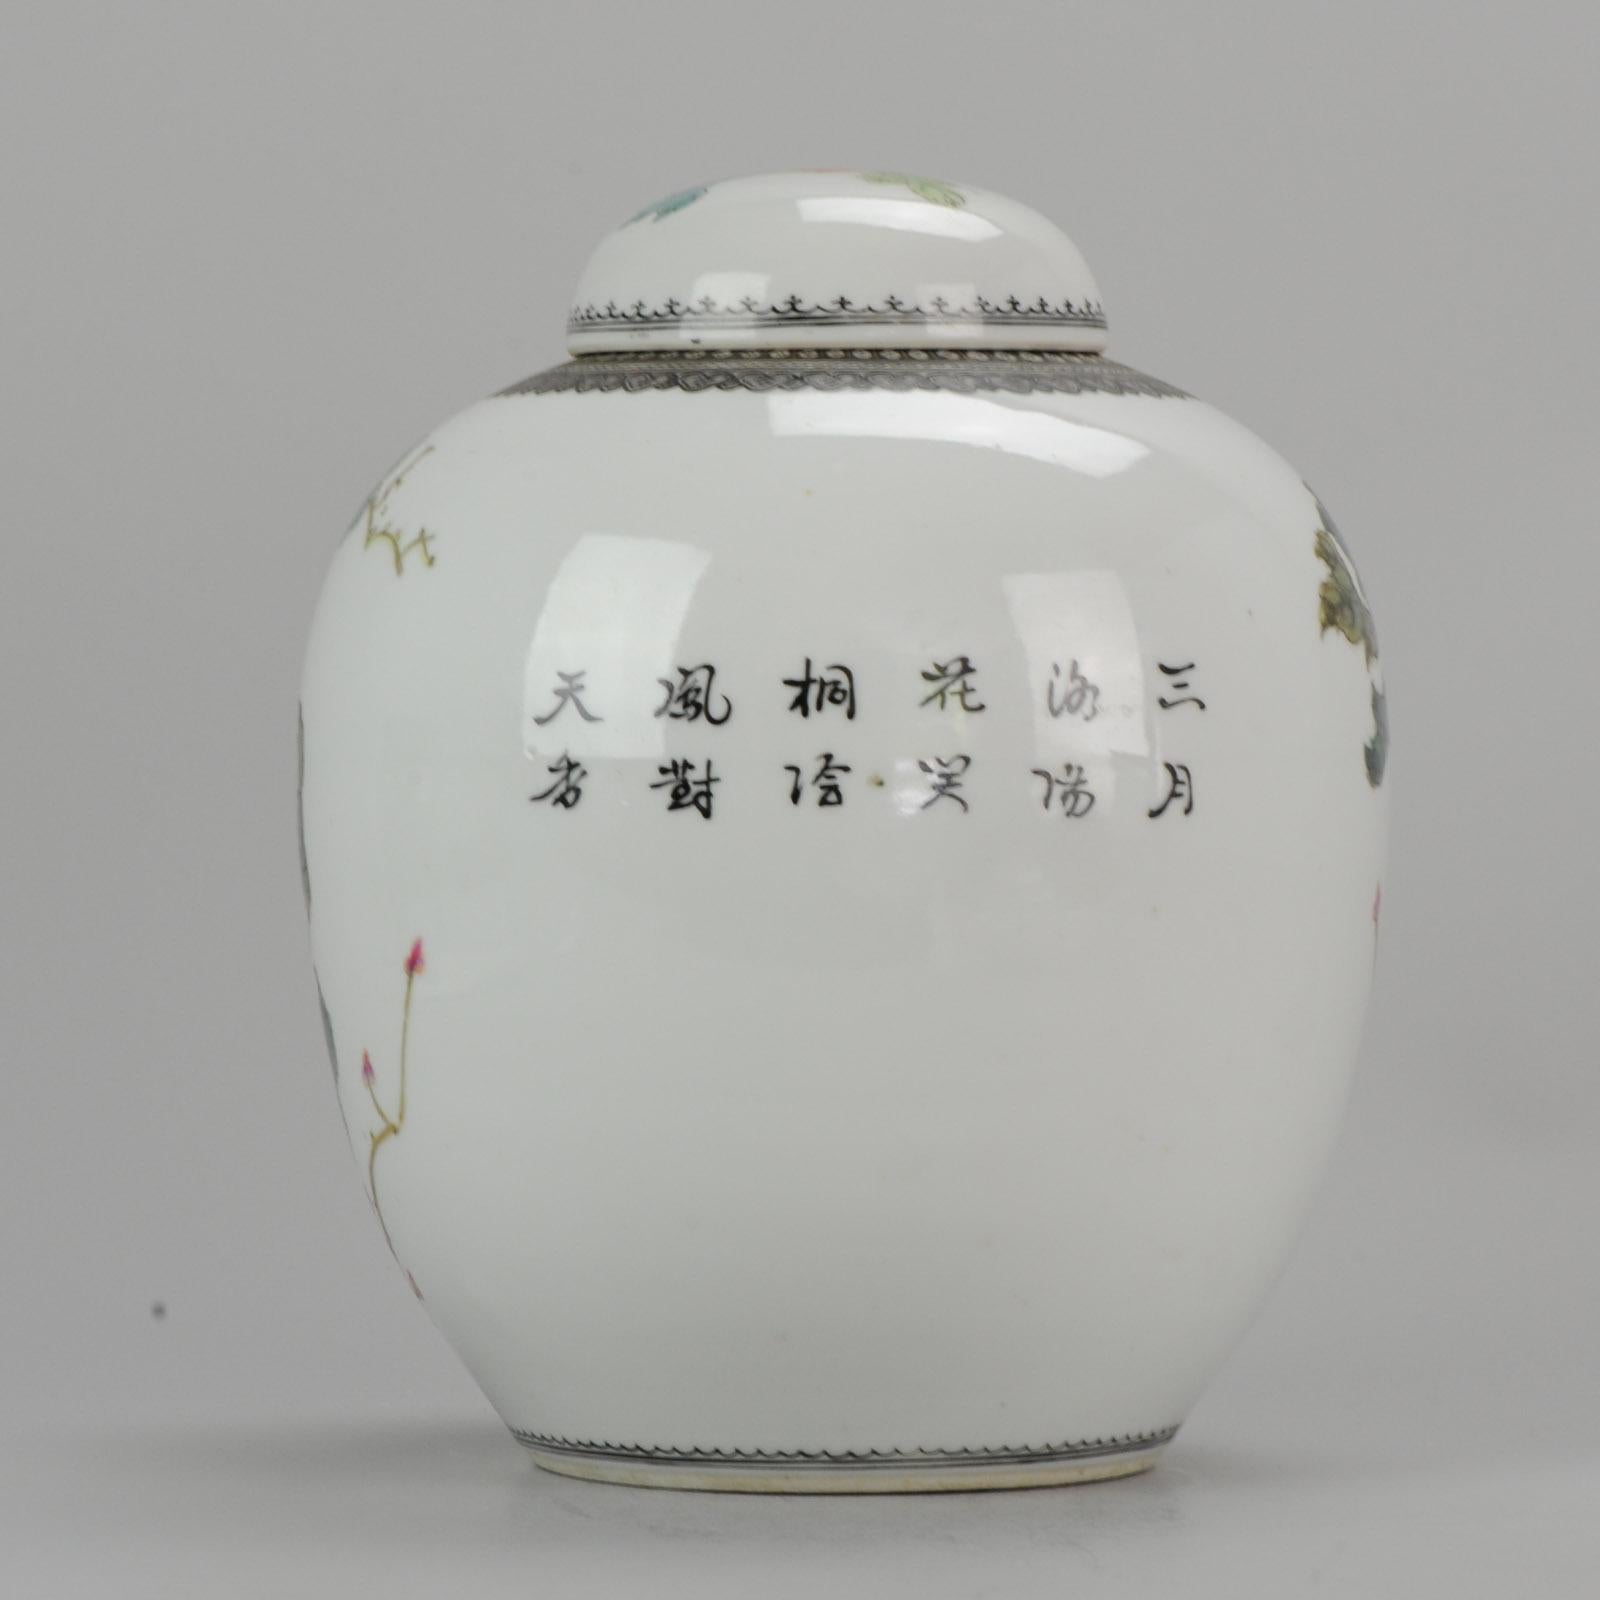 Vase / jarre très joliment décoré d'une scène de fenghuang dans un paysage

Informations complémentaires :
MATERIAL : Porcelaine et poterie
Région d'origine : Chine
Période : 20e siècle PRoC (1949 - aujourd'hui)
État : État général ; parfait.